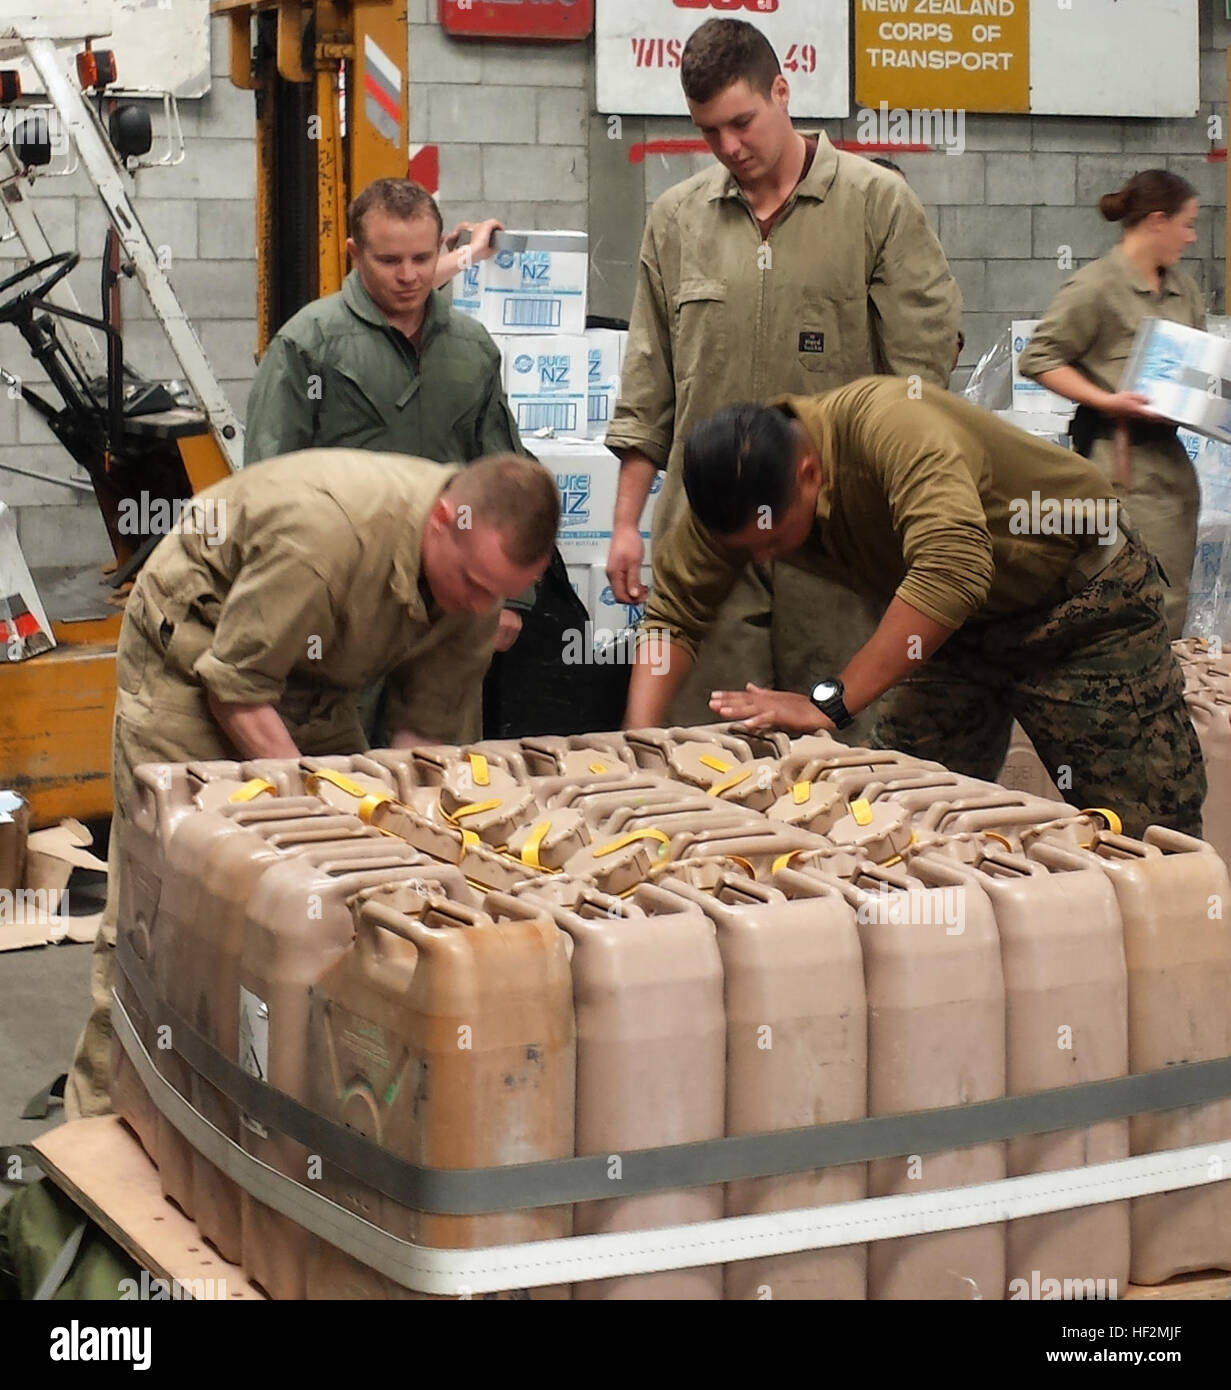 Stati Uniti Marines con il primo supporto di trasporto battaglione, combattere la logistica reggimento 1 e Nuova Zelanda forza di difesa dei soldati con mandata aria plotone, quinto movimento Co., preparare 5-gallone brocche di acqua ad una caduta di aria da un C-130 "Hercules' aeromobile durante la fase di esercizio Kiwi Koru 2014 su nov. 5, 2014. Kiwi Koru è un esercizio interopability centrata nel Pacifico che permette le forze americane ad interagire e imparare con le loro controparti di Kiwi. (Foto di cortesia da Stephen Sheppard/ Rilasciato) Marines, Nuova Zelanda soldati airdrops condotta durante l'esercizio Kiwi Koru 2014 141105-M-UK001-230 Foto Stock